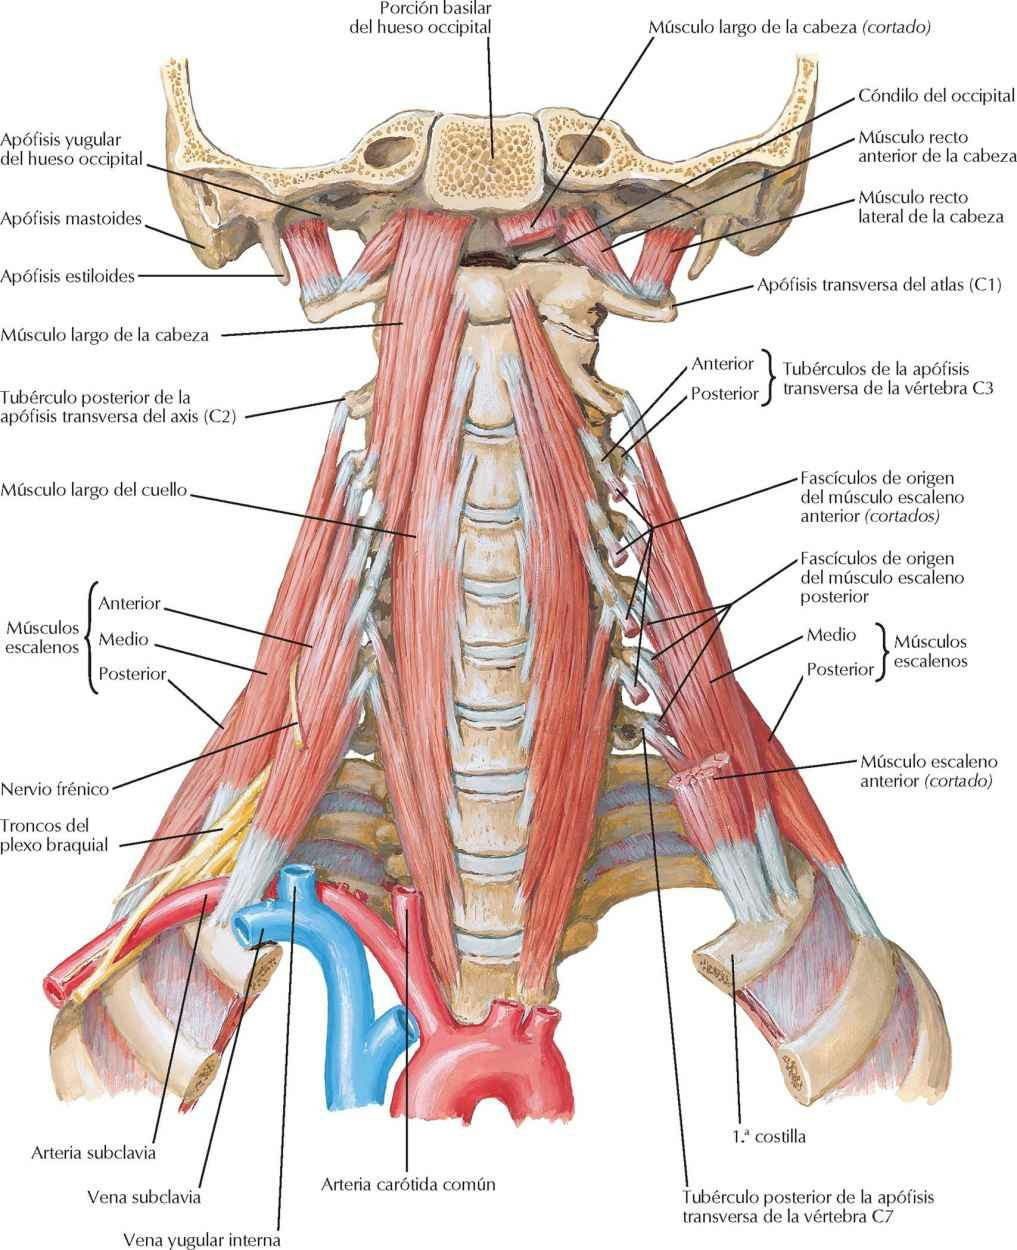 Músculos prevertebrales y laterales del
cuello.